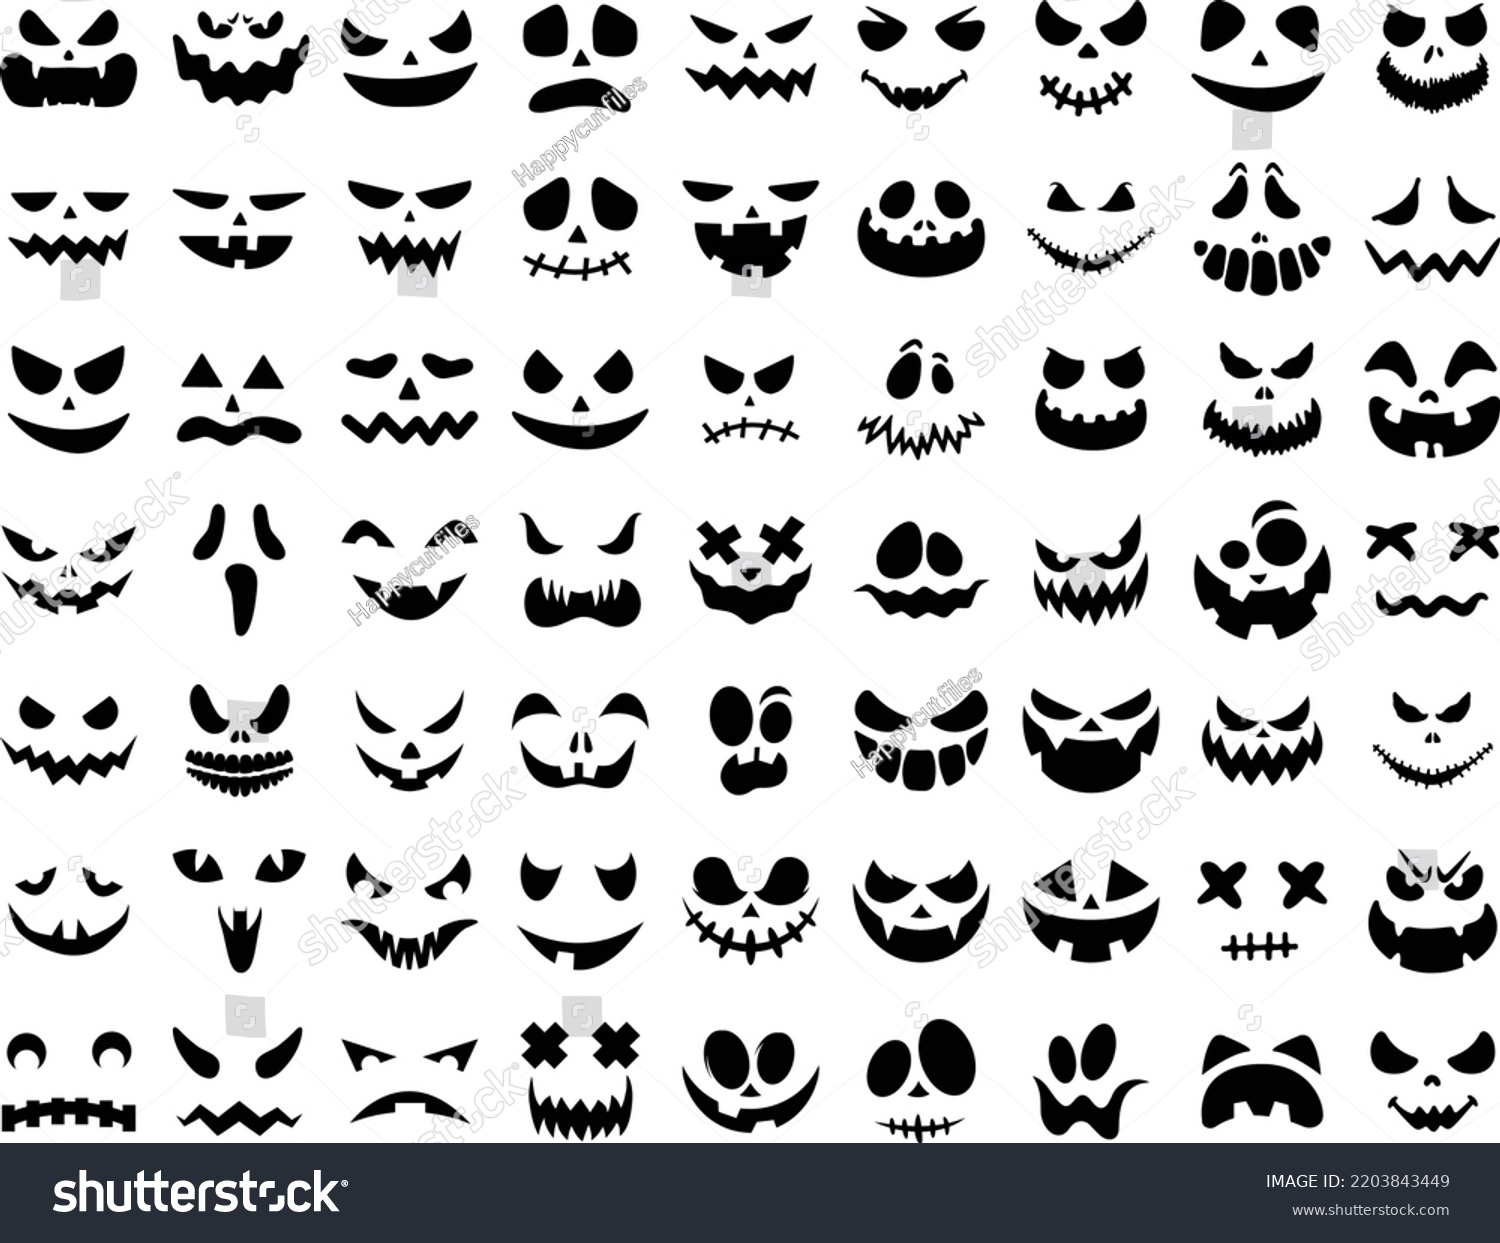 SVG of Halloween Monster Pumpkin Face Clipart Vecter Files Bundle svg